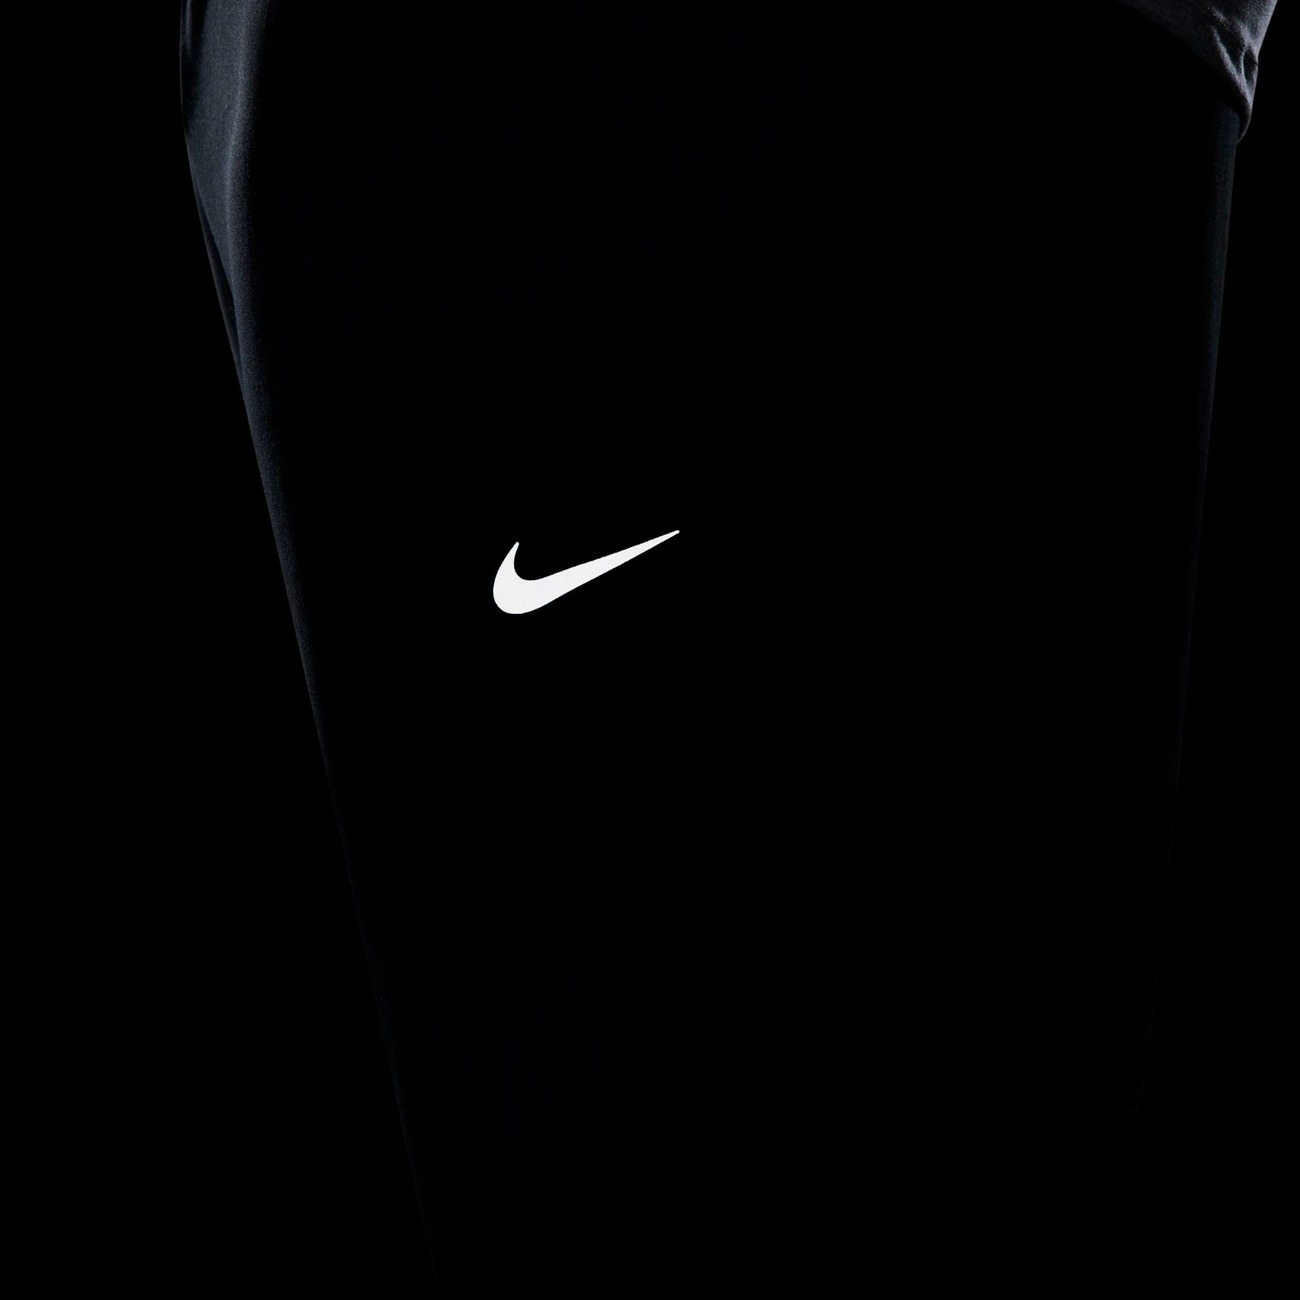 Calça Nike Dri-FIT Challenger Masculina - Foto 7